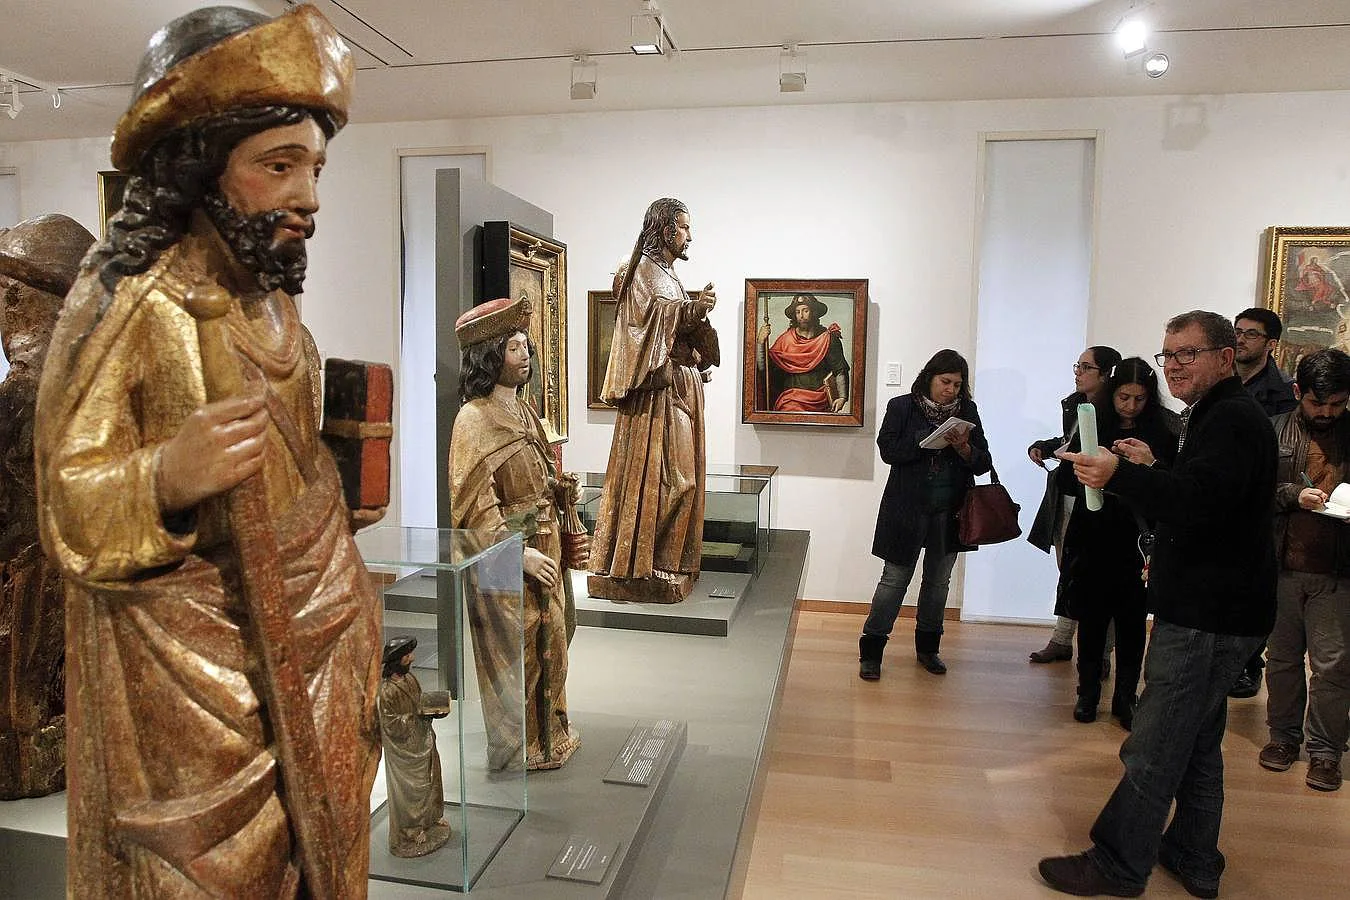 Bieto Pérez Outeriño, director del museo, explica la sala dedicada a Santiago donde es presentado como apóstol, peregrino y caballero